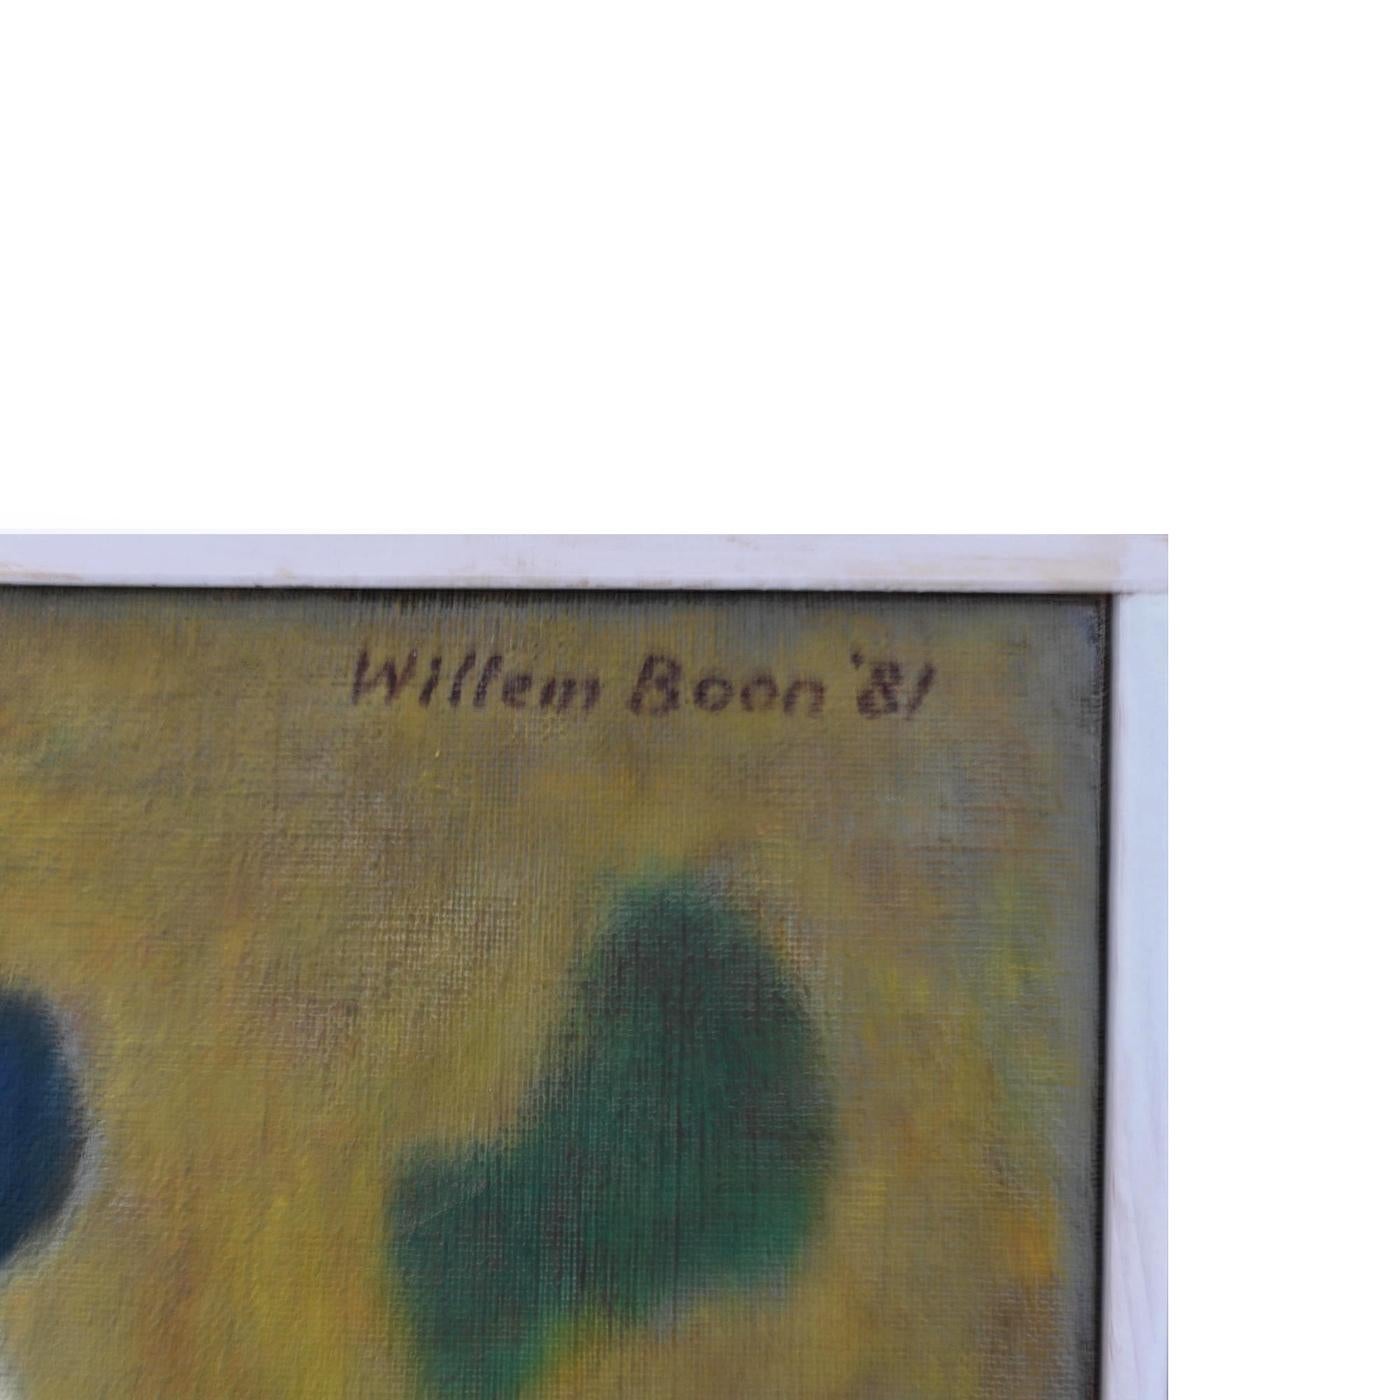 BOON Willem (1902-1982), abstrakte Komposition. Öl auf Leinwand 1981. Bekannter niederländischer Maler der abstrakten Kunst. In einem kleinen weißen Holzrahmen.